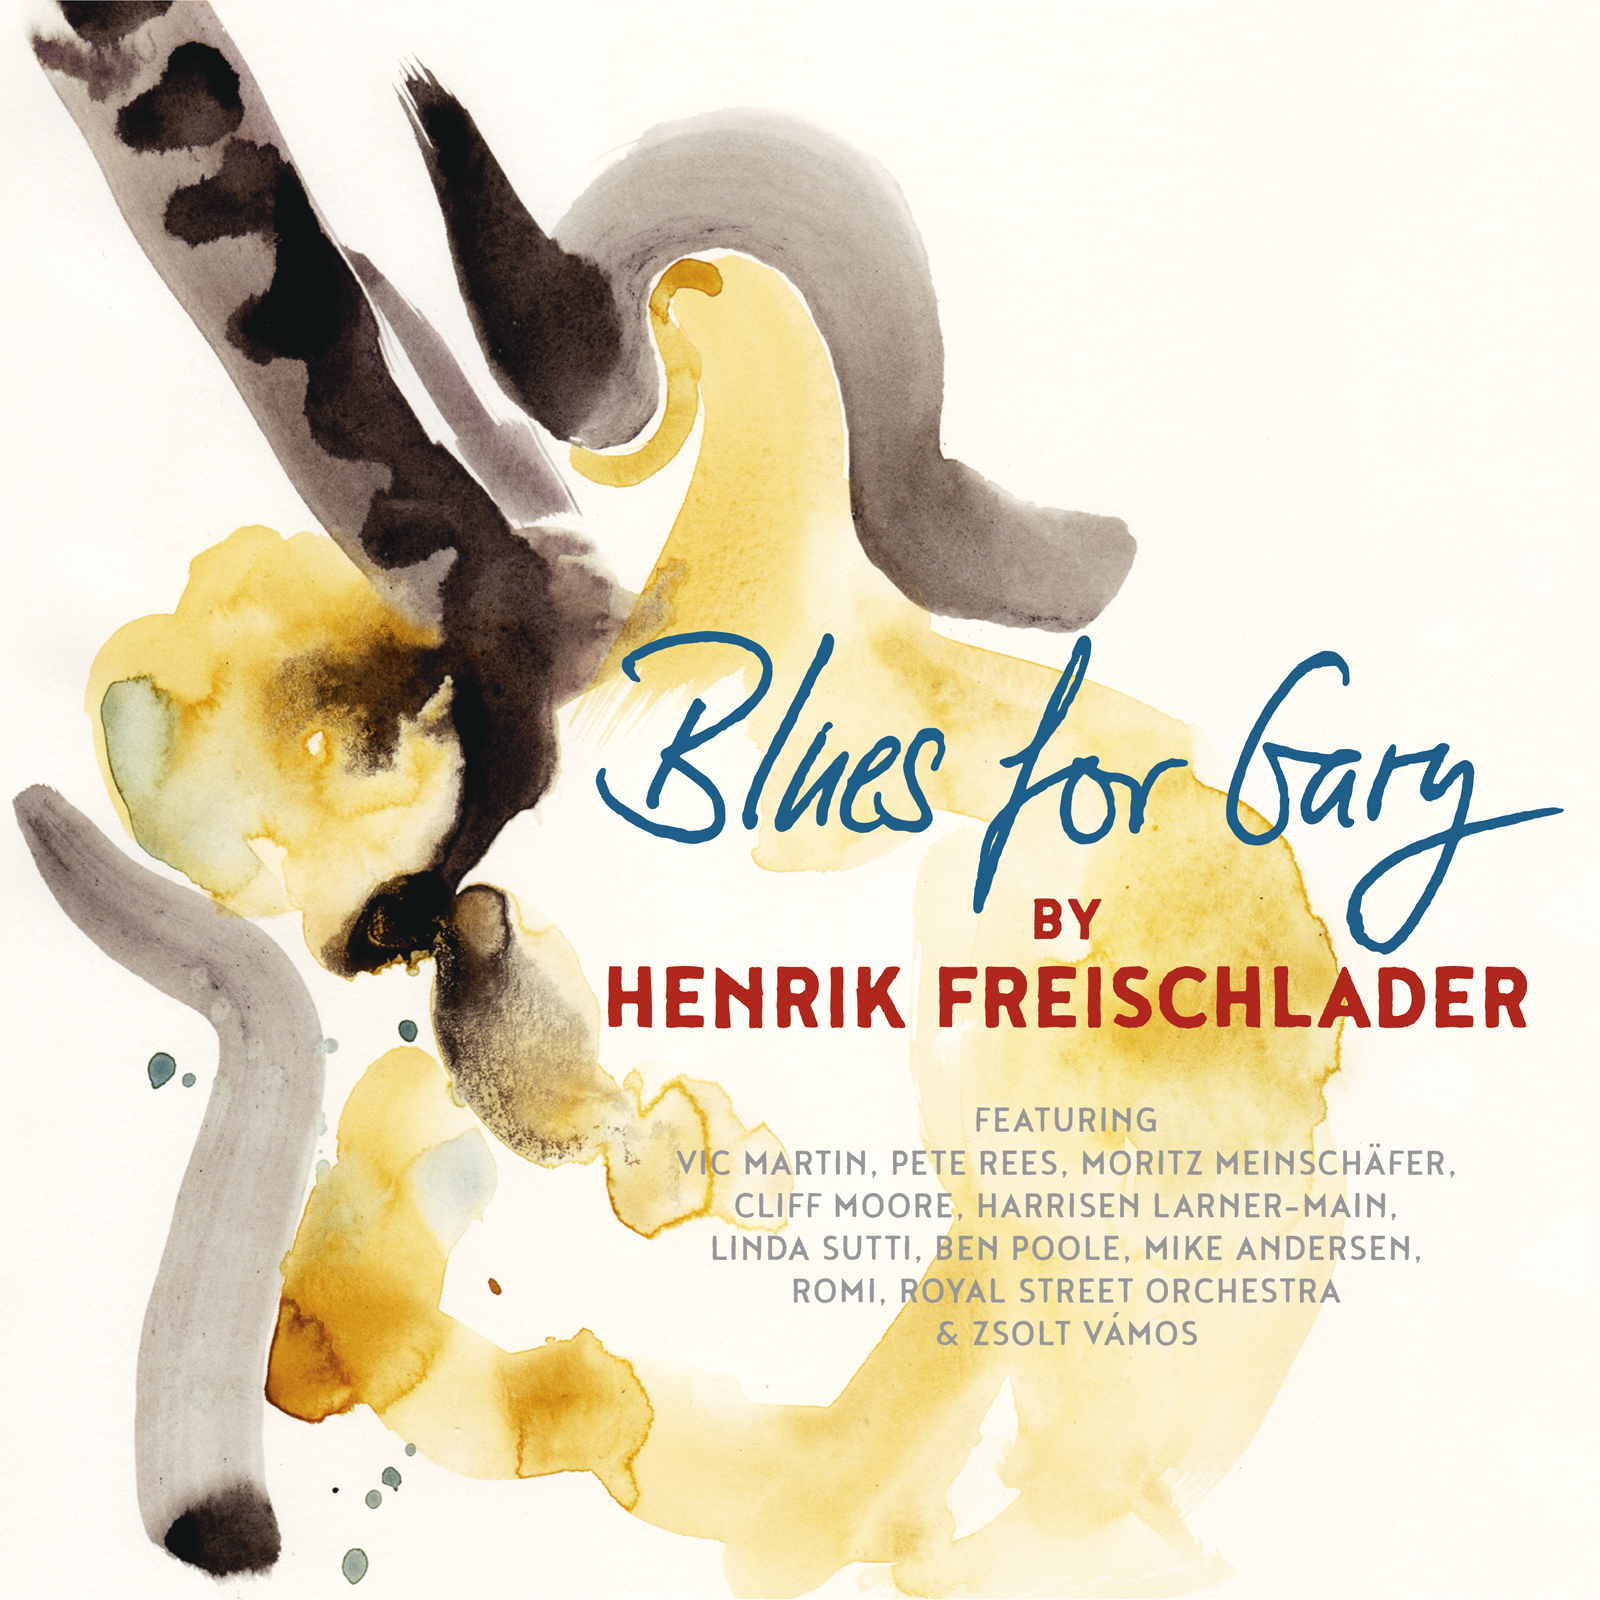 image of album cover for Henrik Freischlader's Blues for Gary UK shows